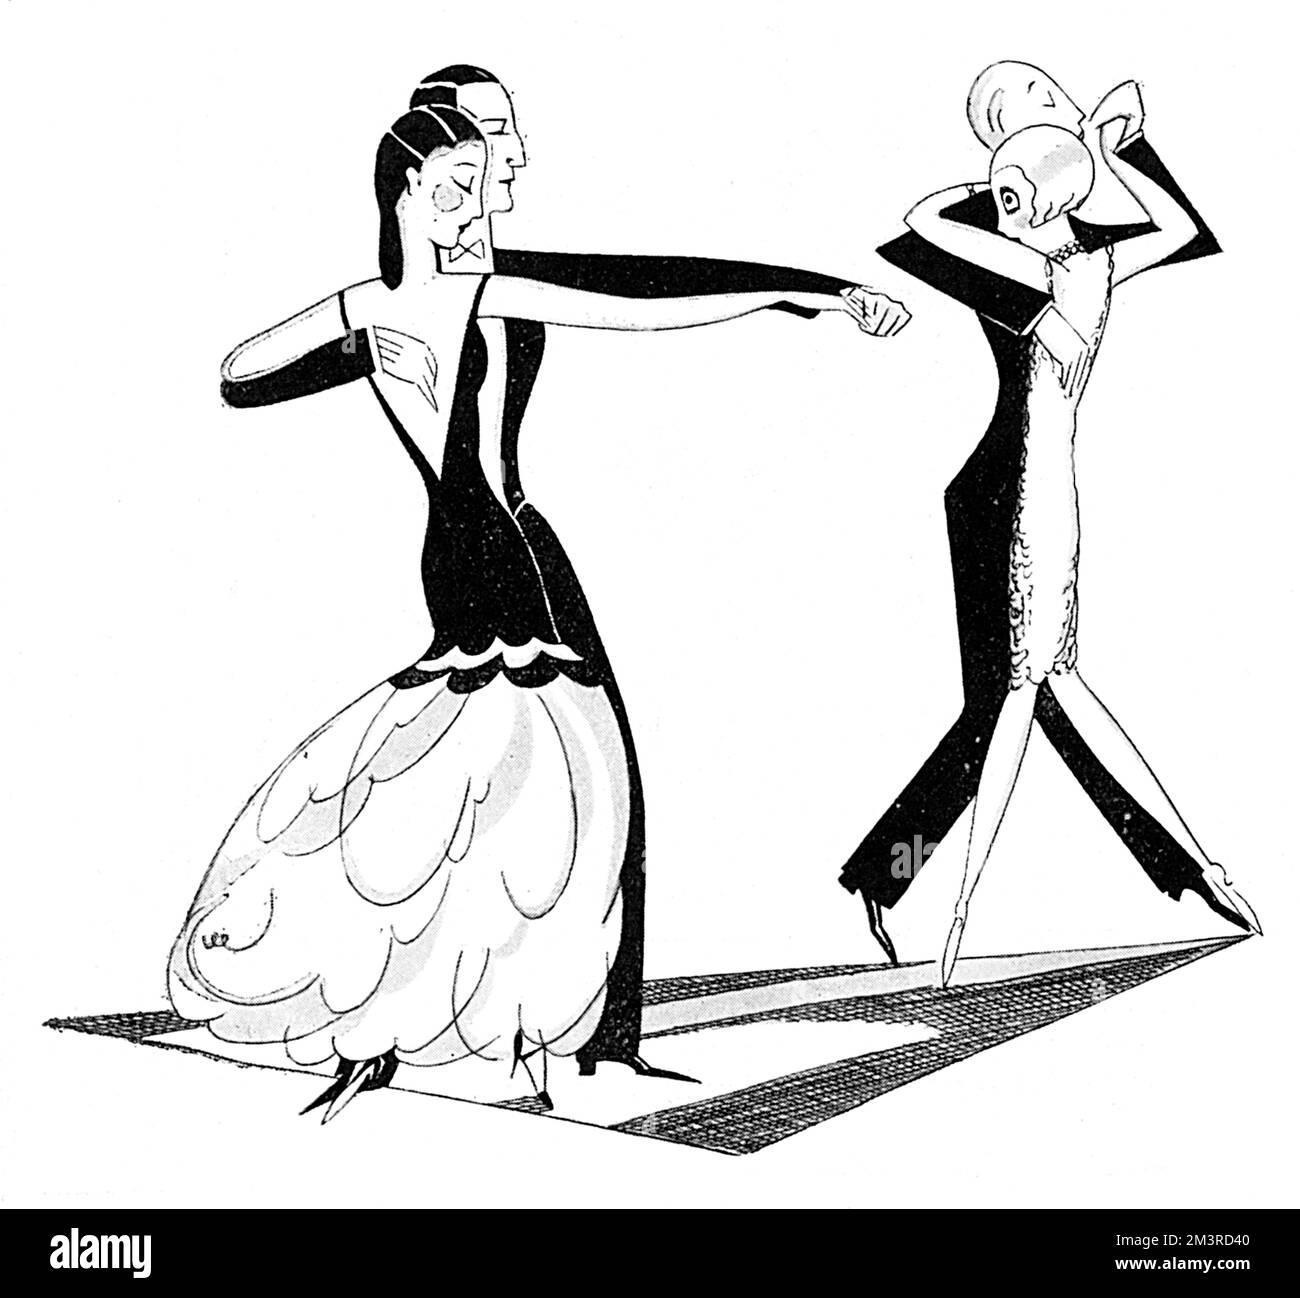 Eine spanische Dame mit einem engen schwarzen Oberteil und einem langen rosa Chiffonrock demonstriert den authentischen Tango auf der Tanzfläche im Savoy Hotel. Datum: 1926 Stockfoto